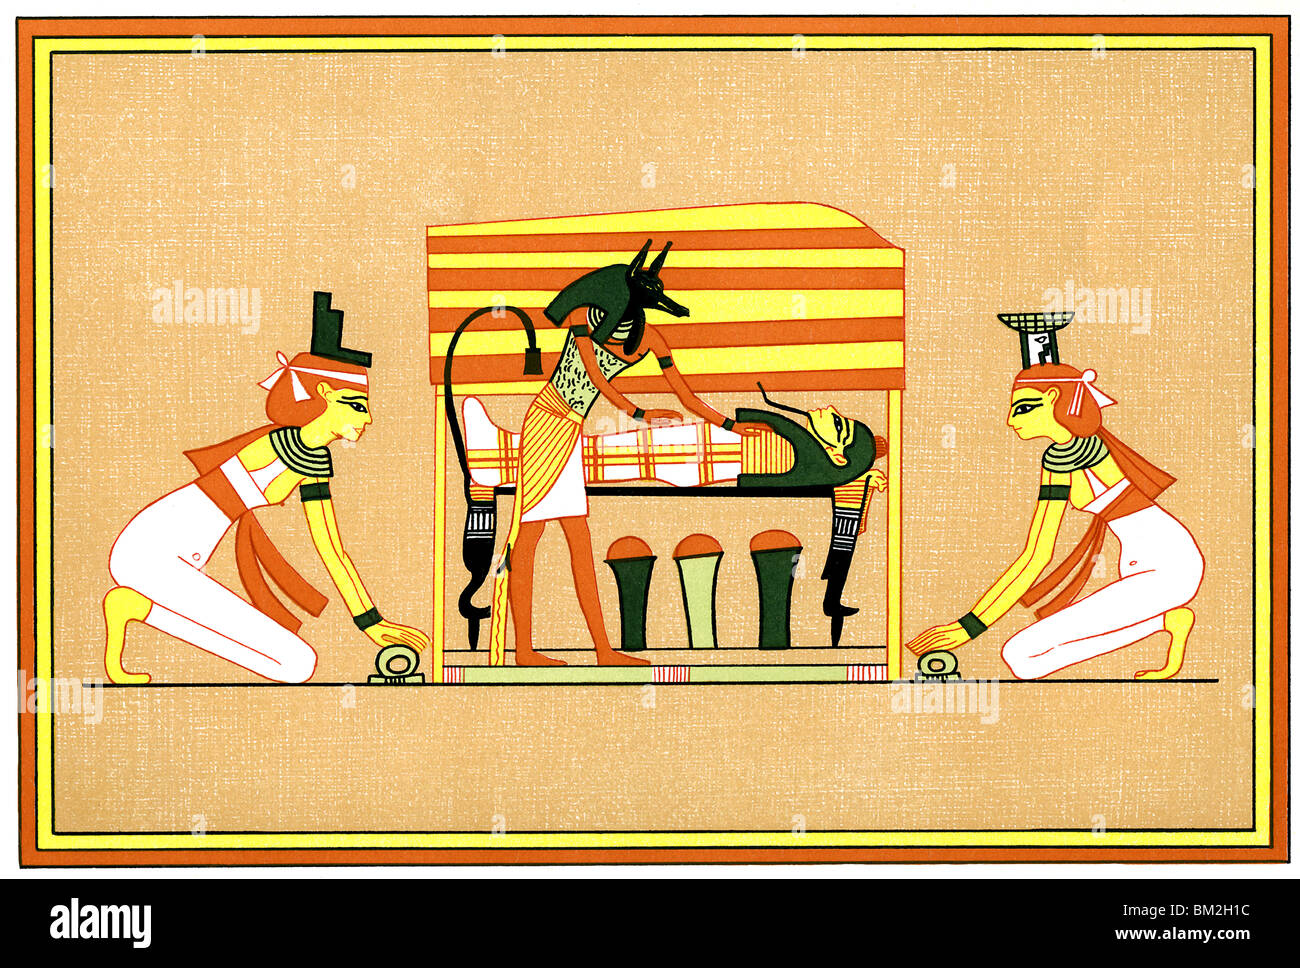 Anubis, le dieu à tête de chacal des morts et le guide de l'au-delà, les ministres à Osiris, dieu de la fertilité et de la mort. Banque D'Images